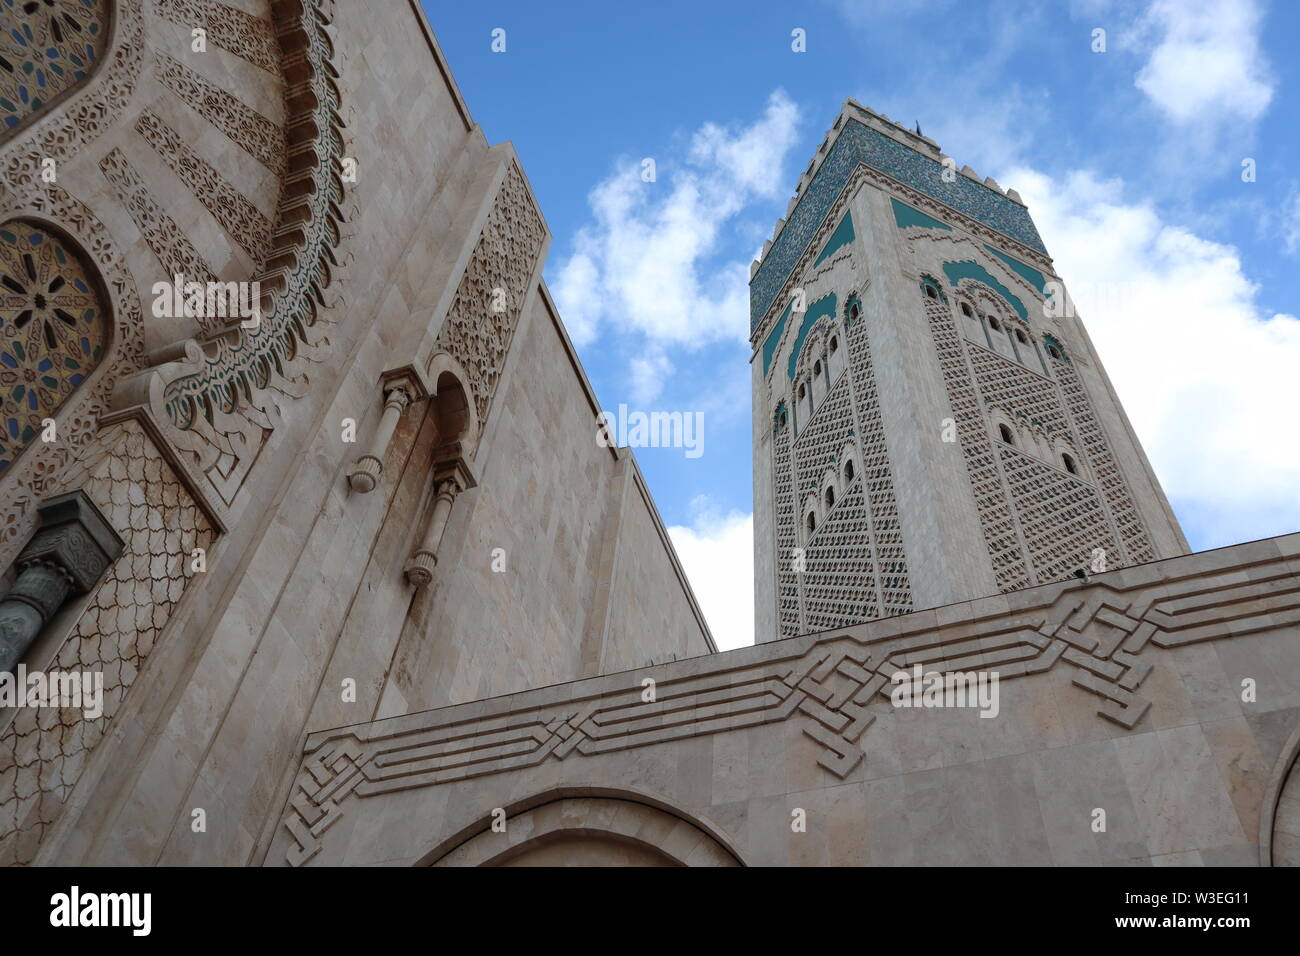 Avant d'entrer dans la Mosquée Hassan II, Casablanca, Maroc. Marocain bleu ciel autour de la plus haute tour du monde minaret pour 210 mètres. Banque D'Images